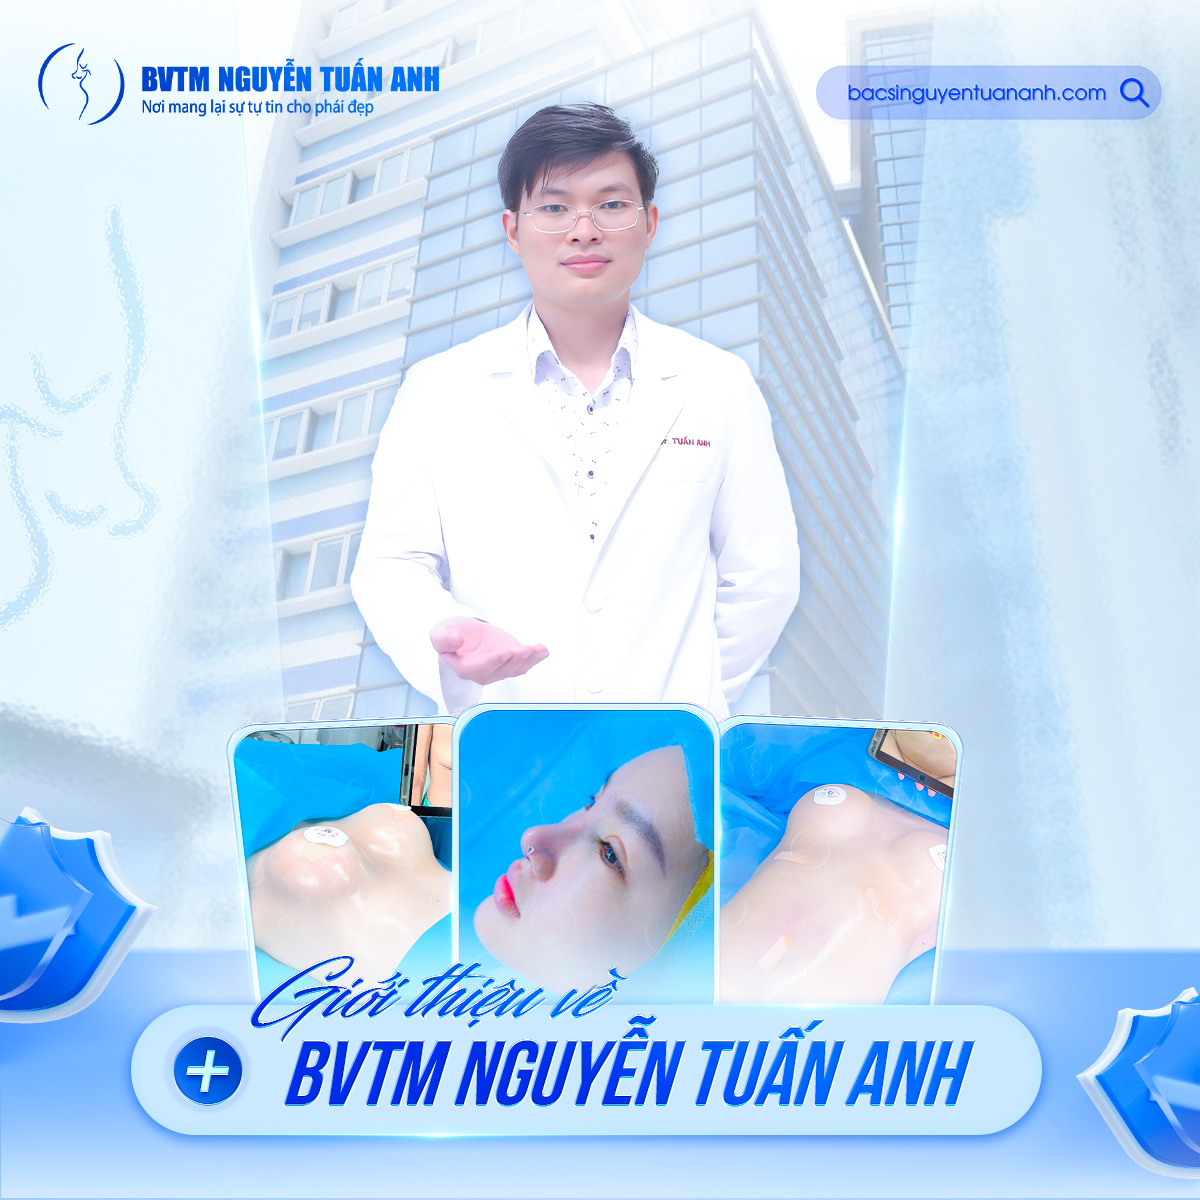 BVTM Nguyễn Tuấn Anh